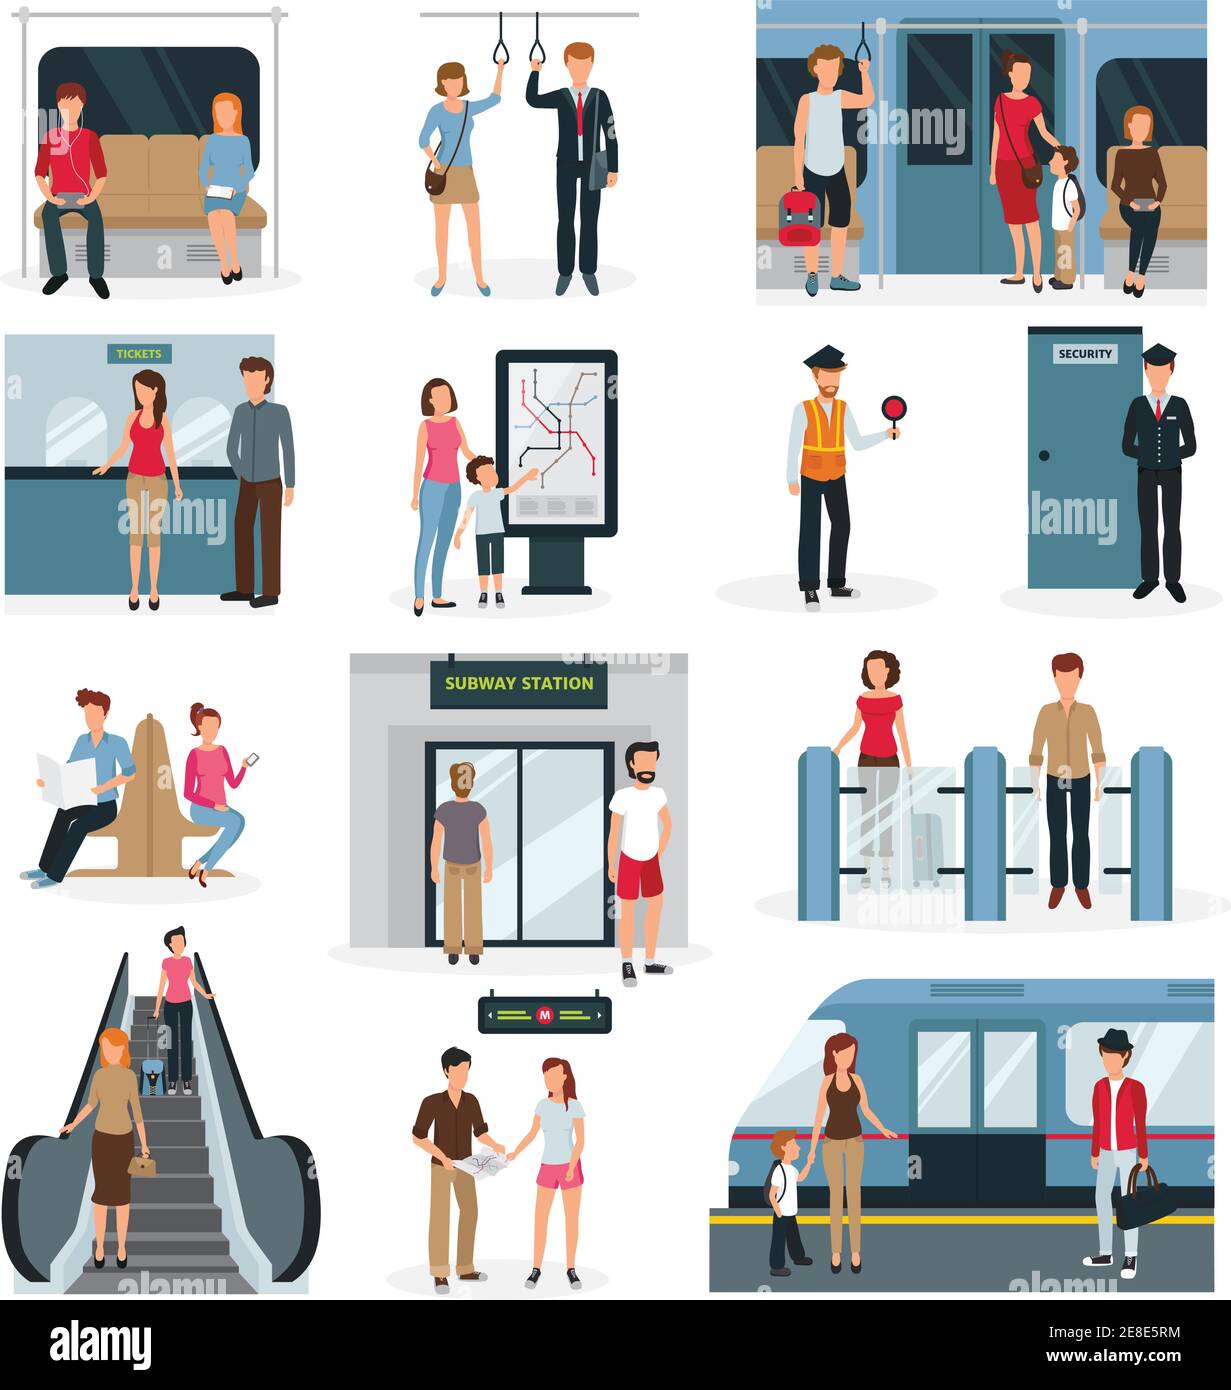 Décor plat avec des personnes dans différentes situations dans le métro illustration vectorielle isolée sur fond blanc Illustration de Vecteur